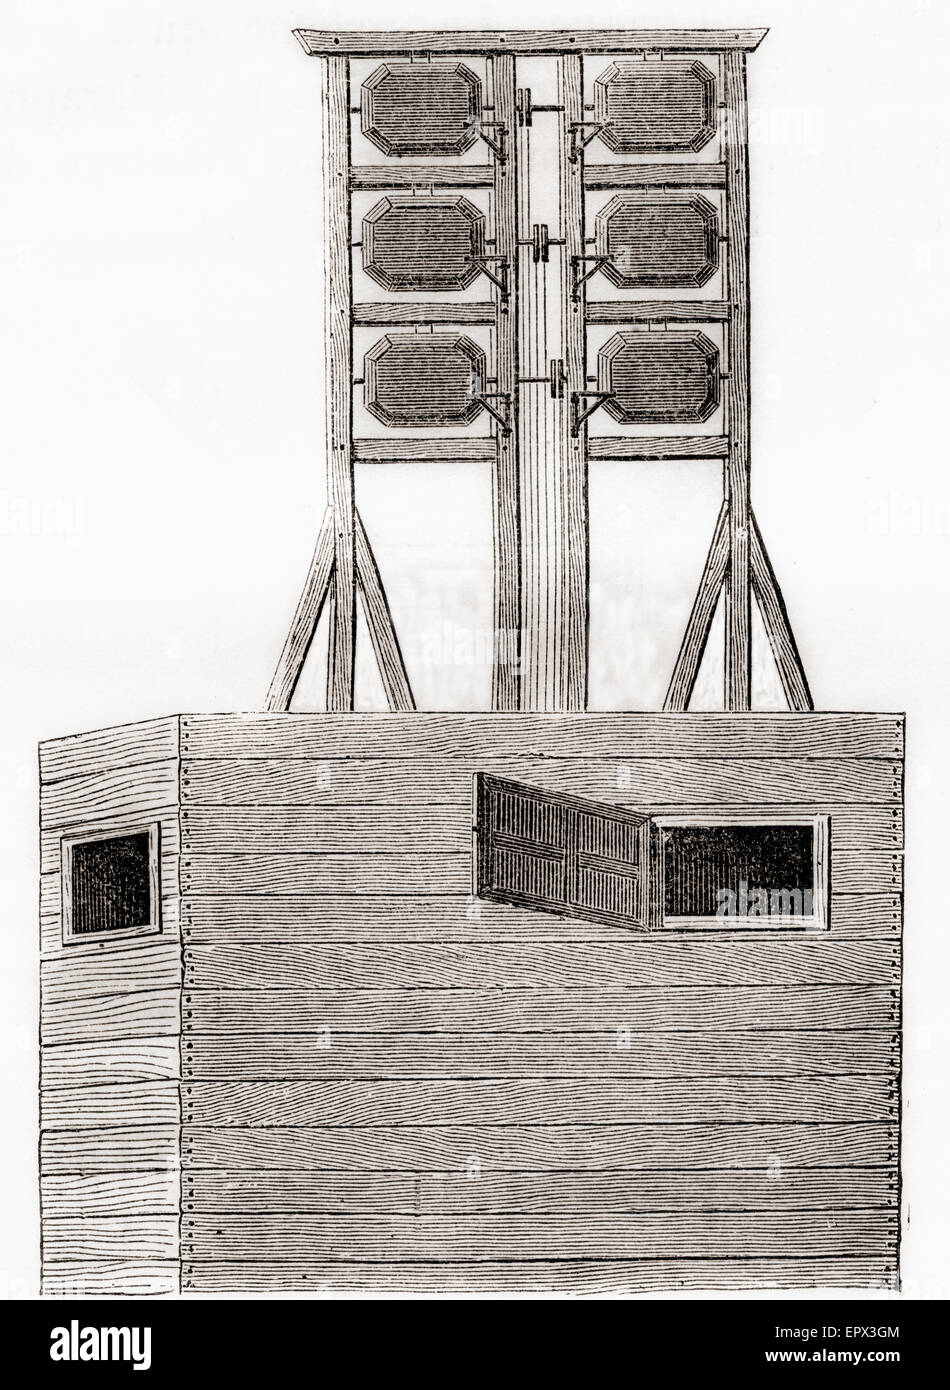 Un système de télégraphe aérien utilisé en Angleterre au xviiie siècle. Banque D'Images